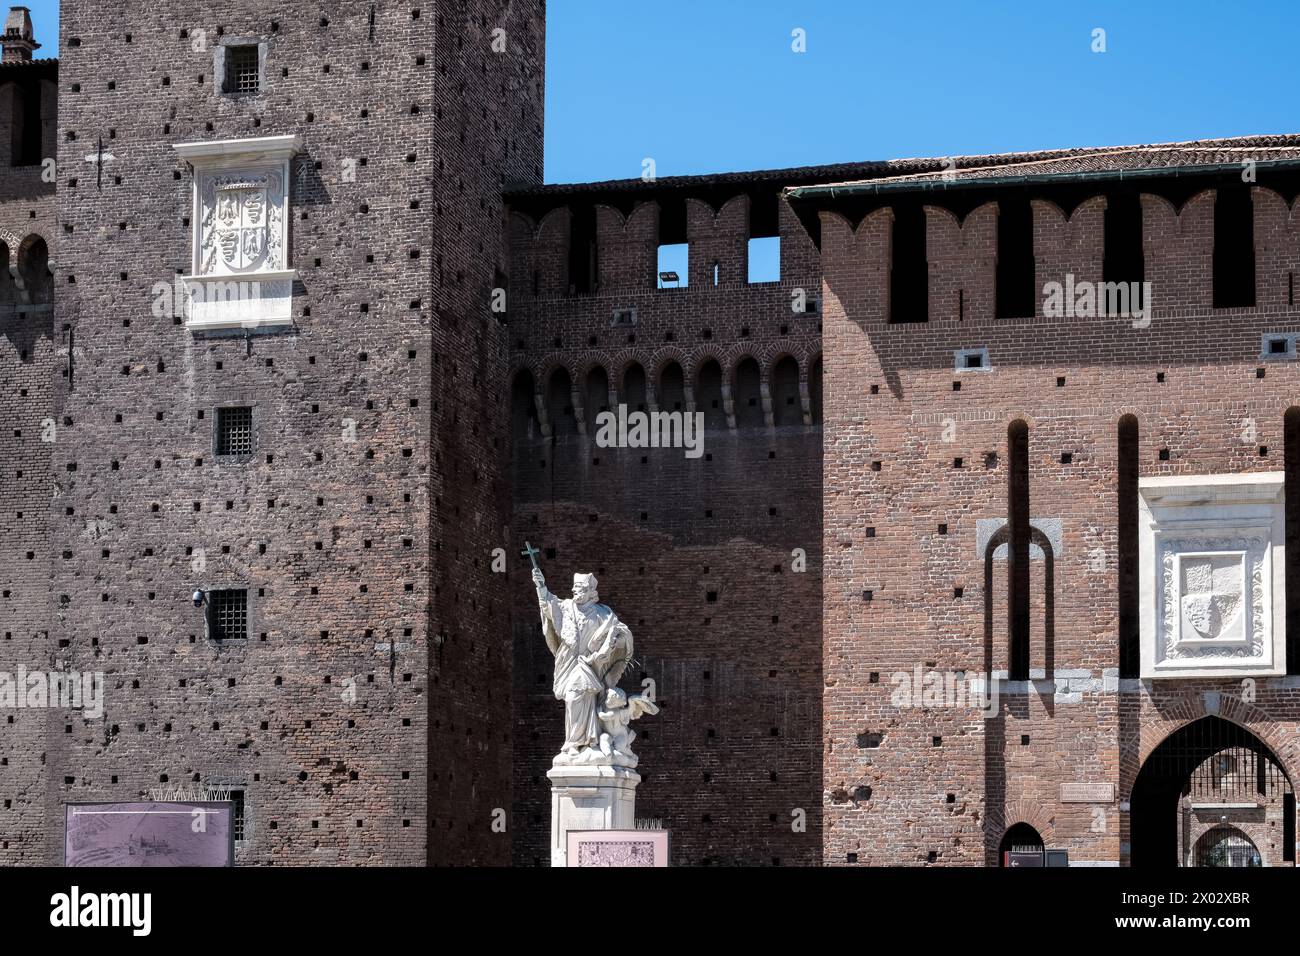 Particolare del Castello Sforzesco, fortificazione medievale risalente al XV secolo, oggi sede di musei e collezioni d'arte Foto Stock